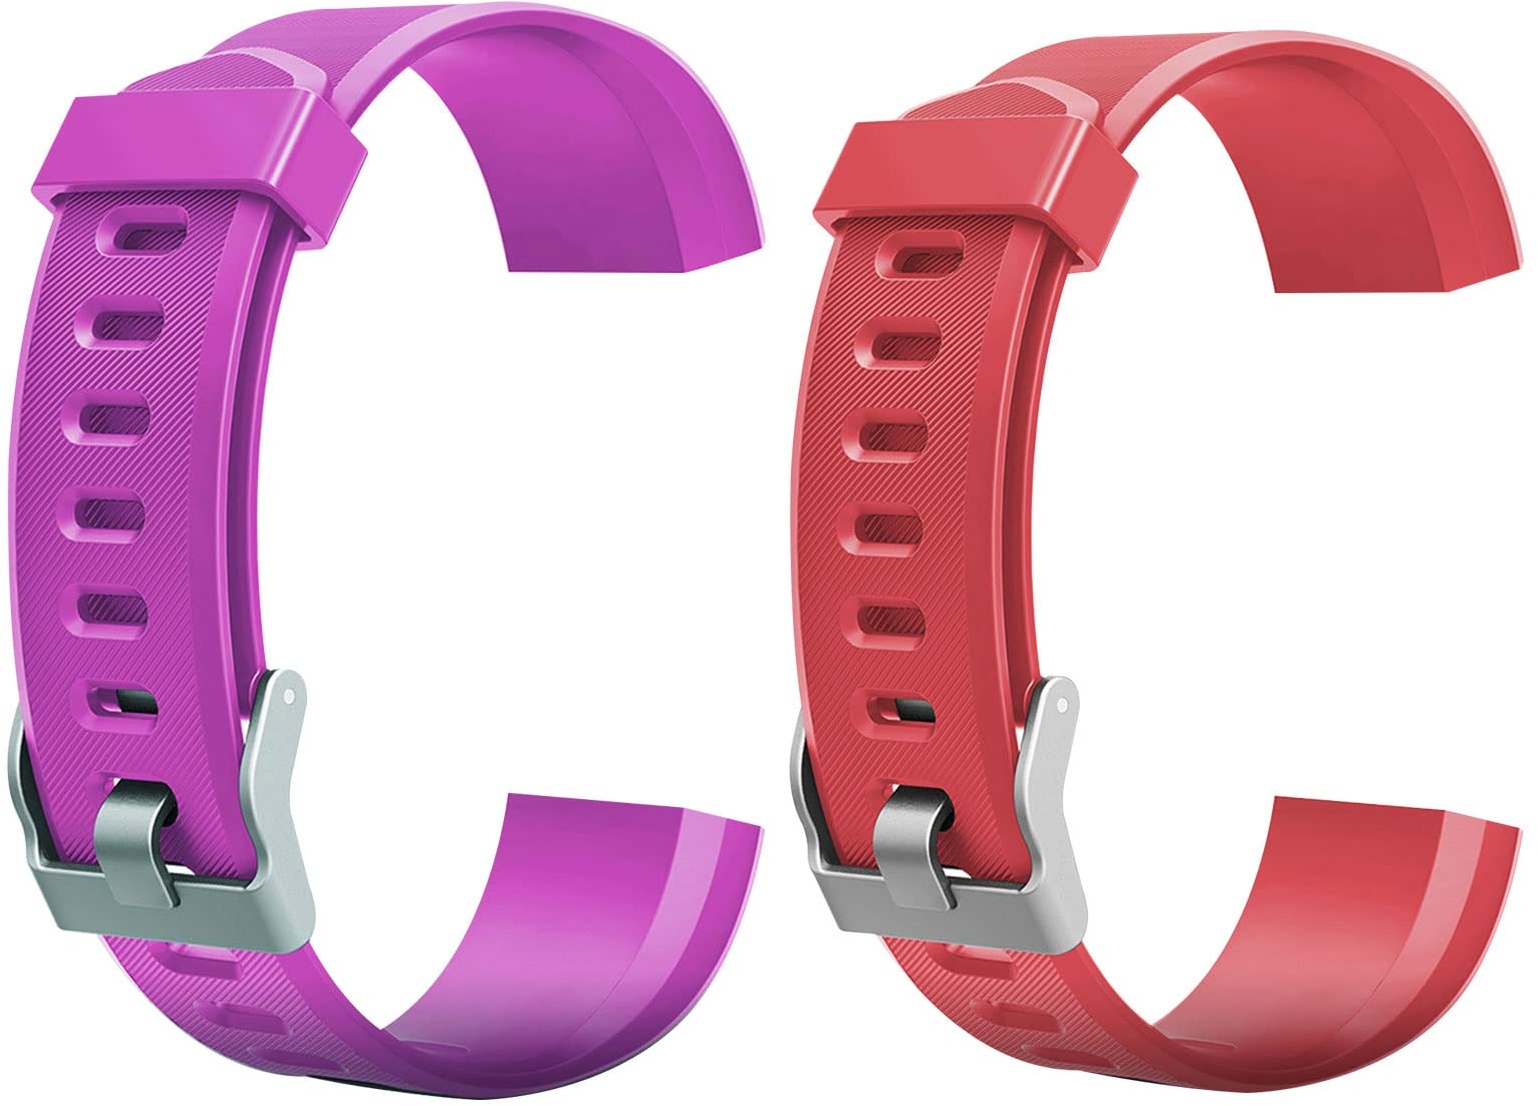 2 Stück ID 115plus HR Ersatzarmbänder, buntes Ersatz-Armband für Id115 Plus Hr Smartwatch, Armbänder für Fitness-Tracker-Uhr, Violett + Rot